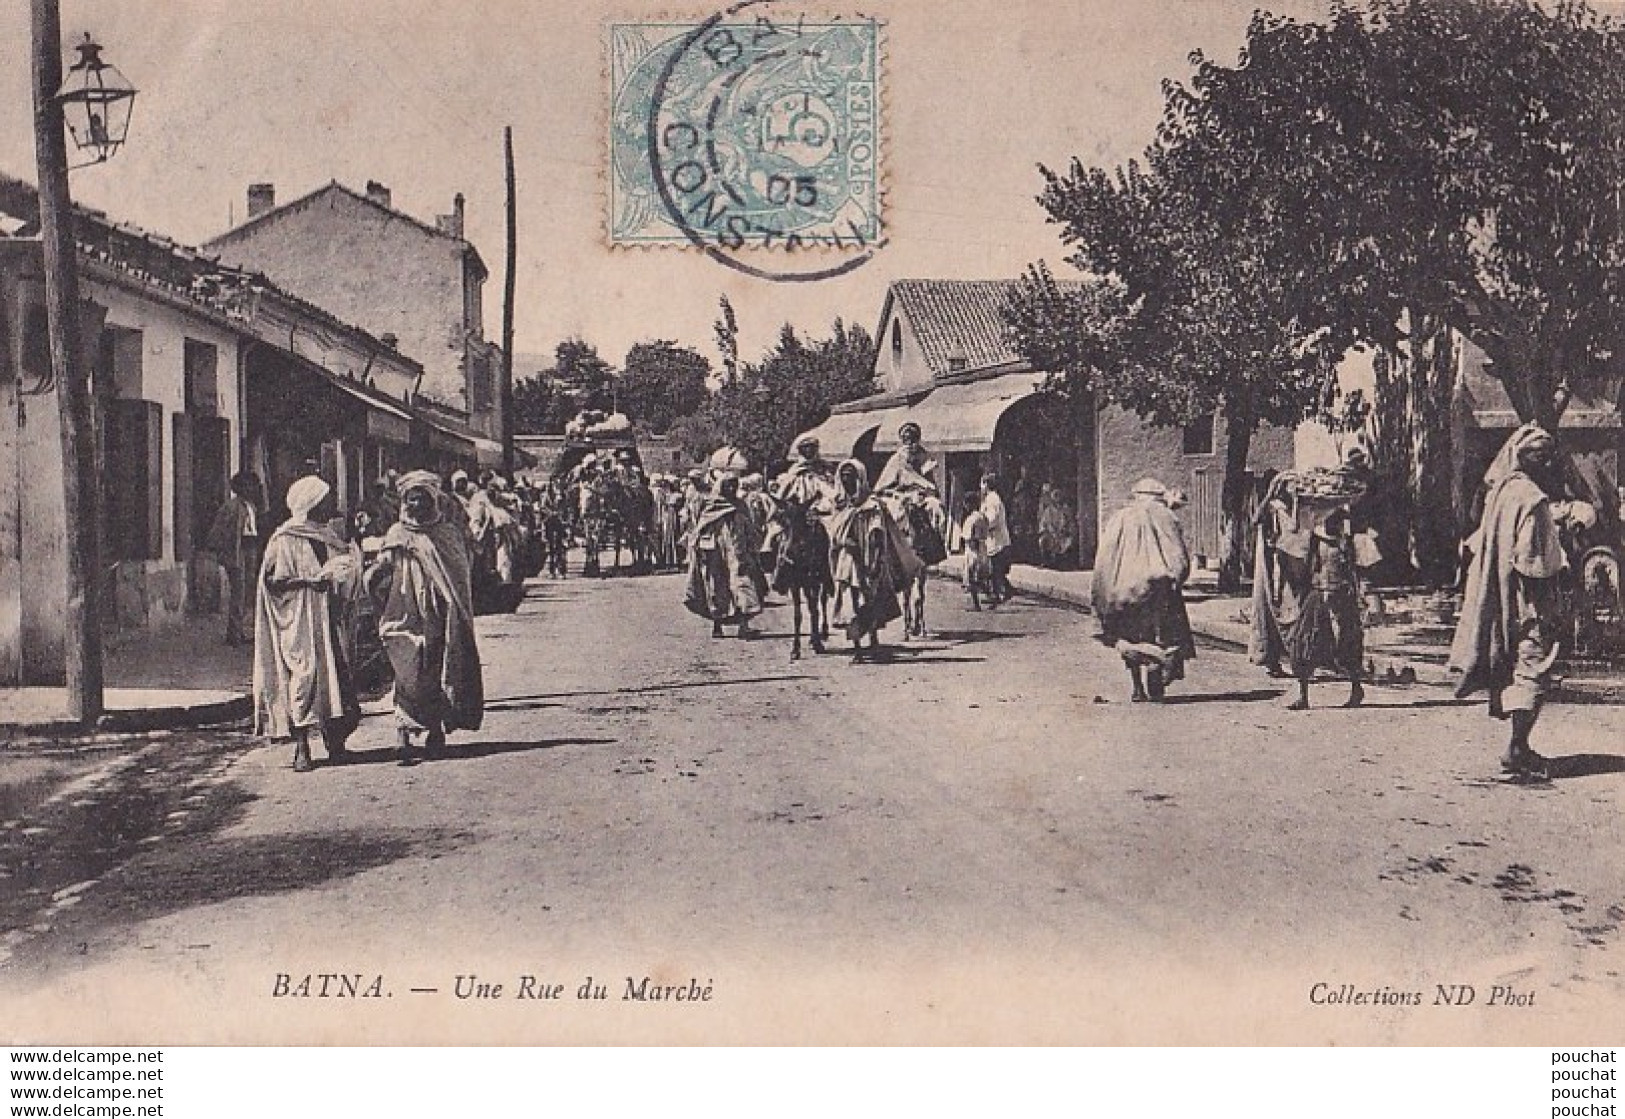 A16- BATNA (ALGERIE) UNE RUE DU MARCHE - ( ANIMATION - HABITANTS ) - Batna